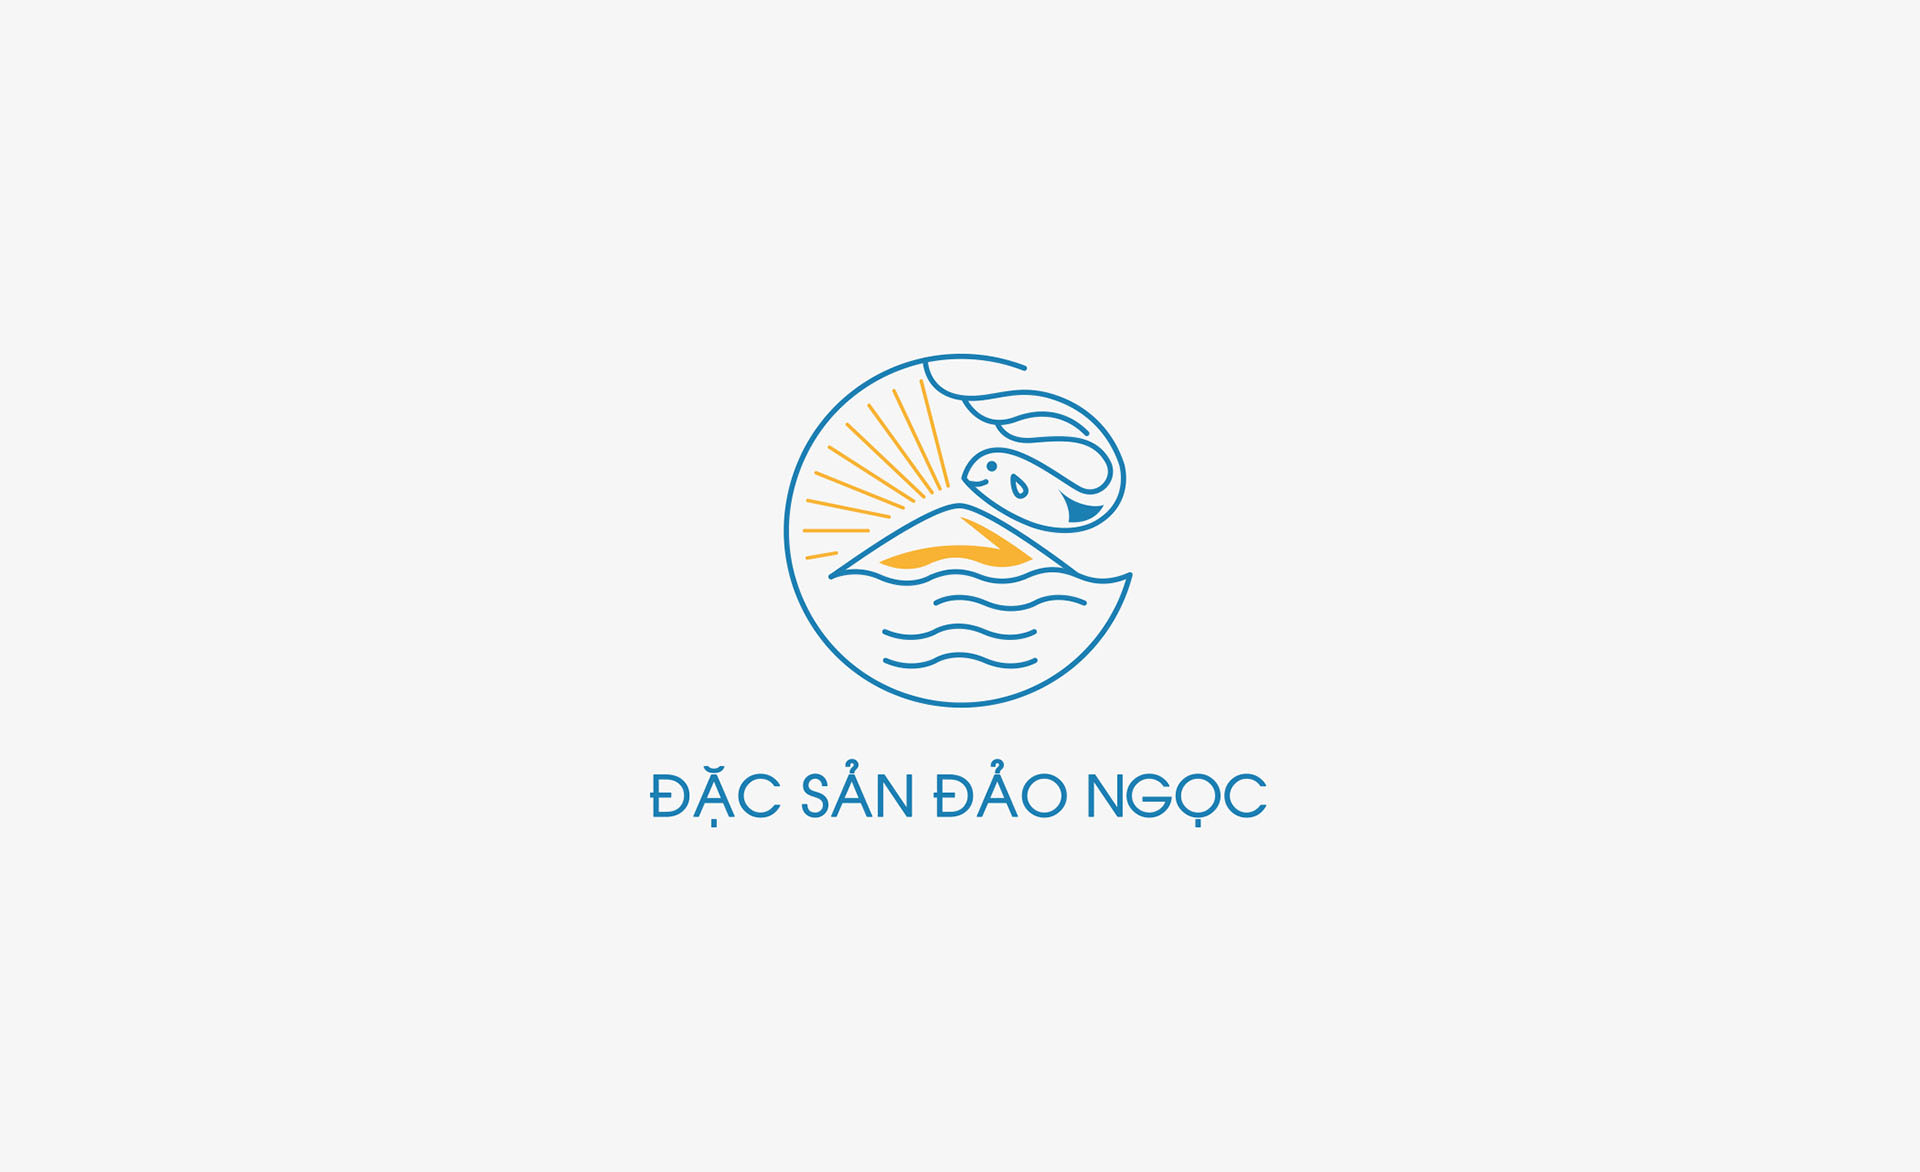 DAC SAN DAO NGOC